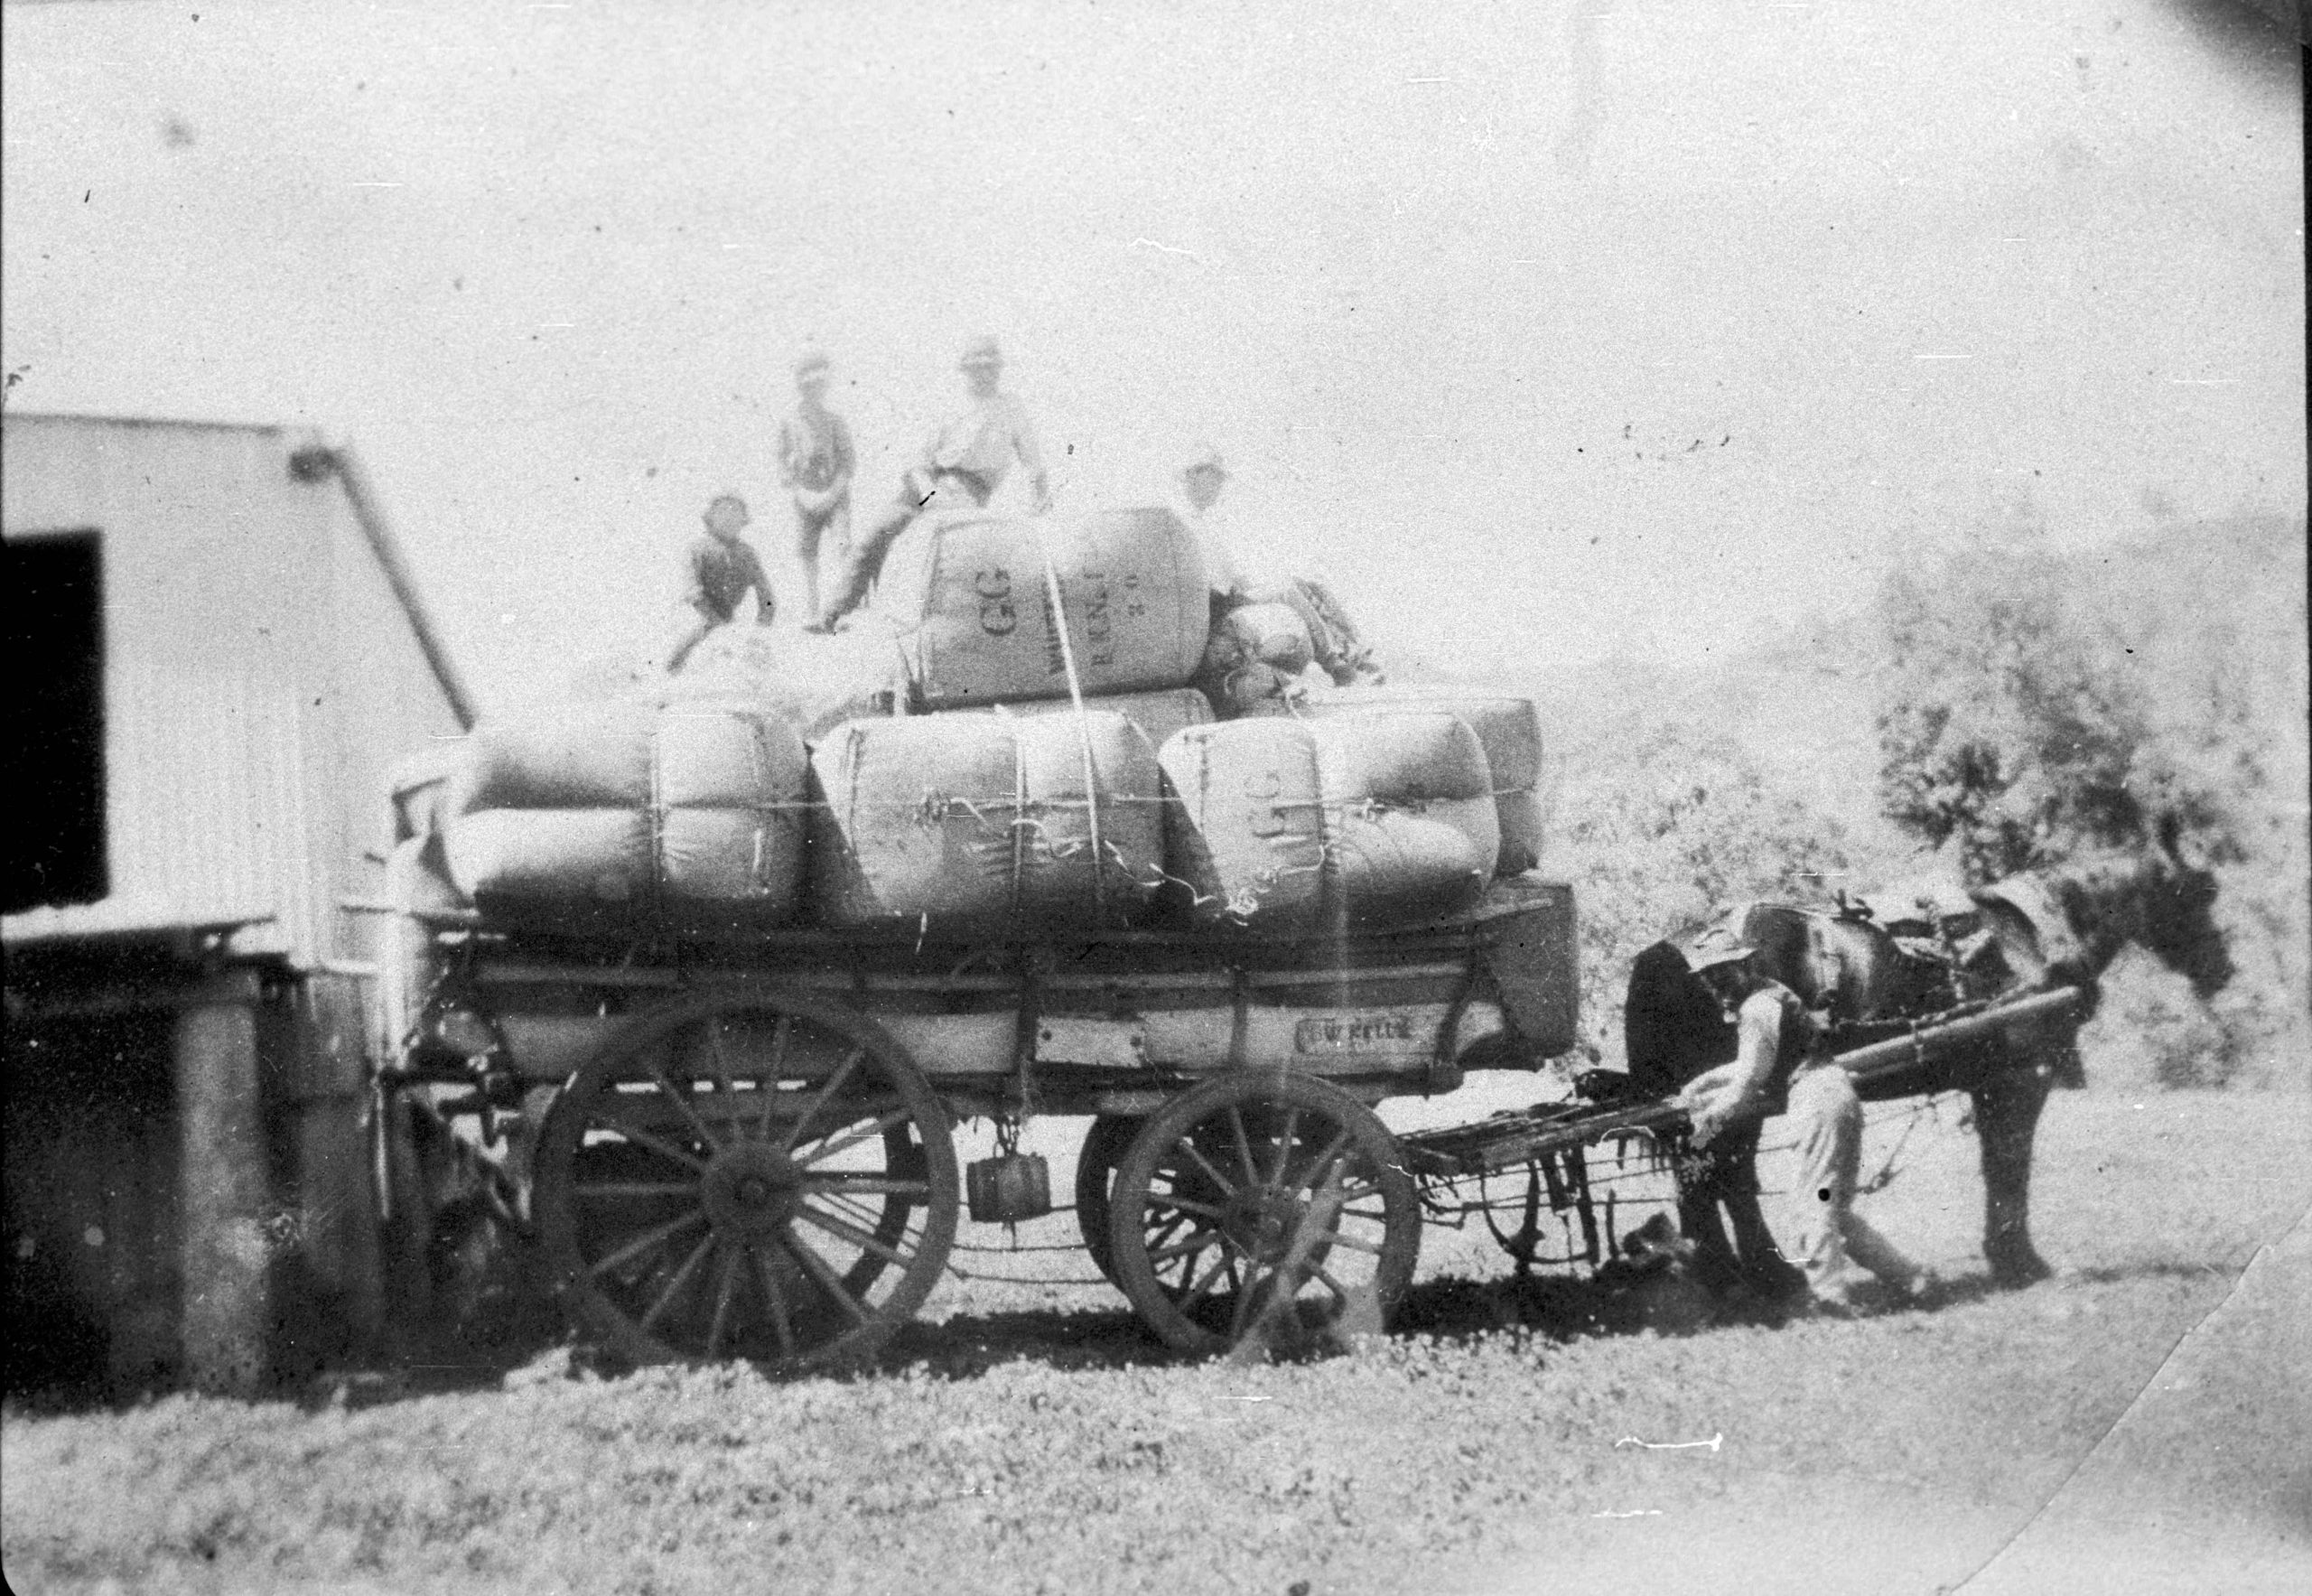 Loading wool bales at Basin Creek C.1924